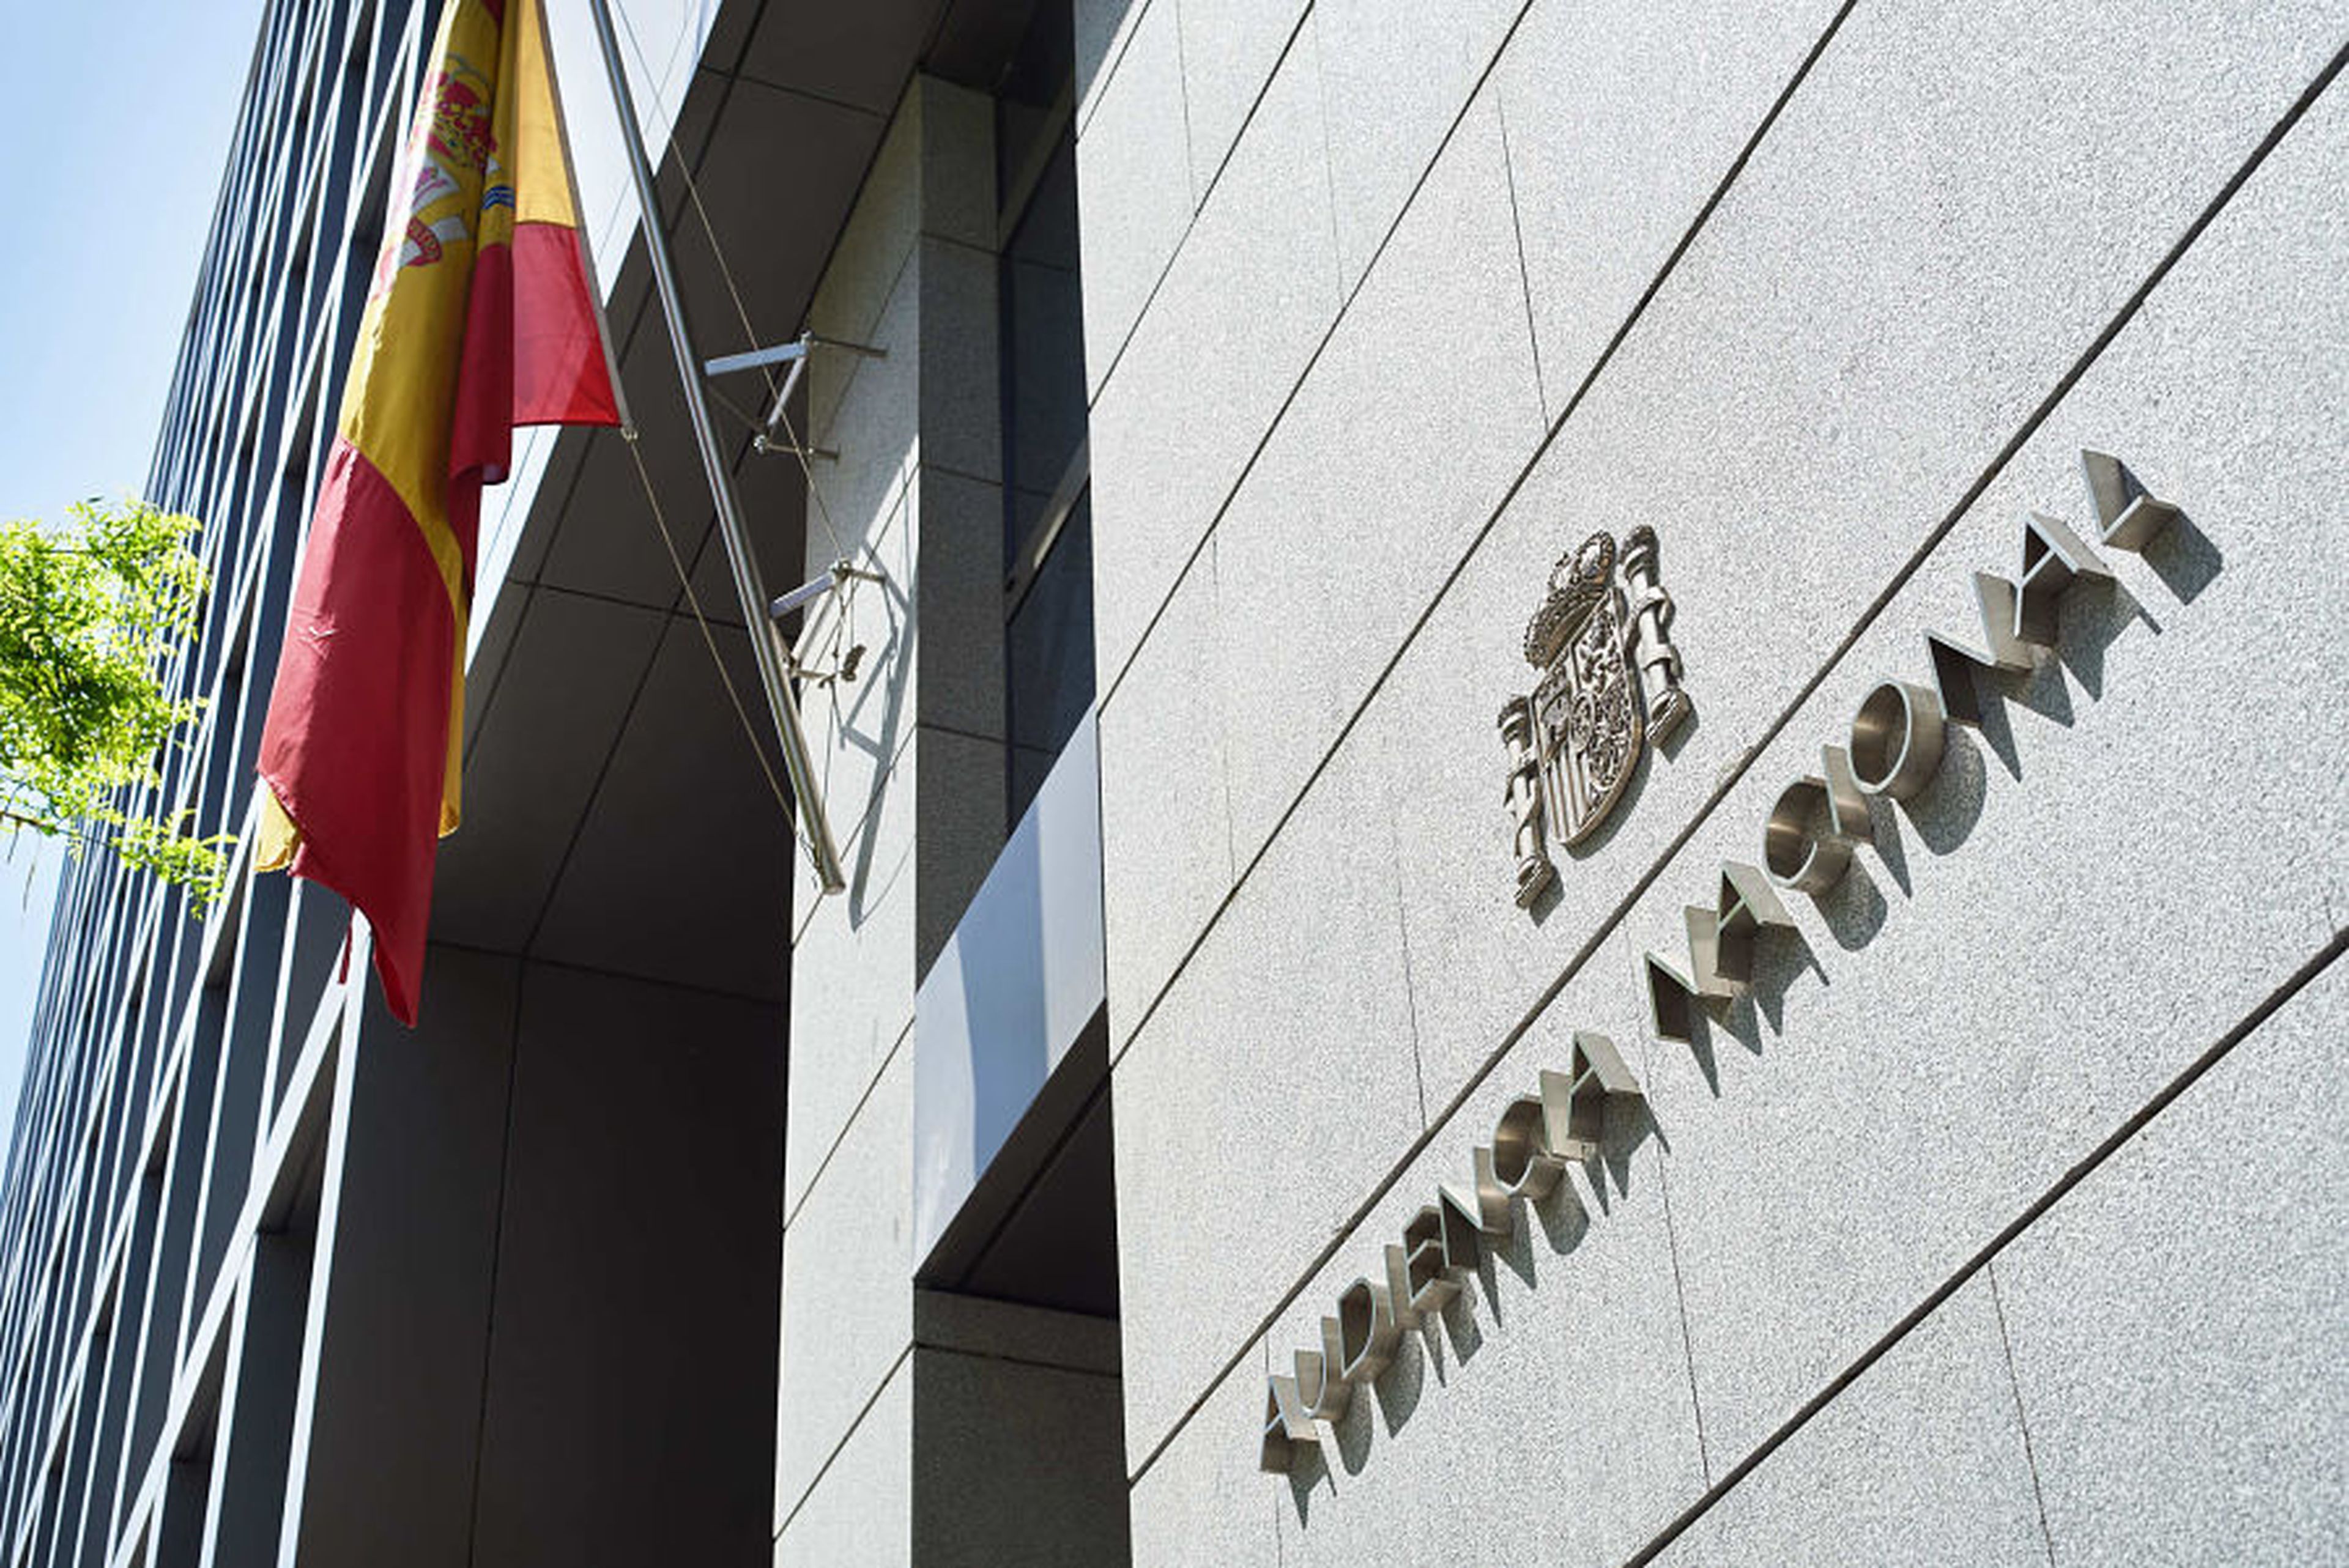 Sede de la Audiencia Nacional en Madrid